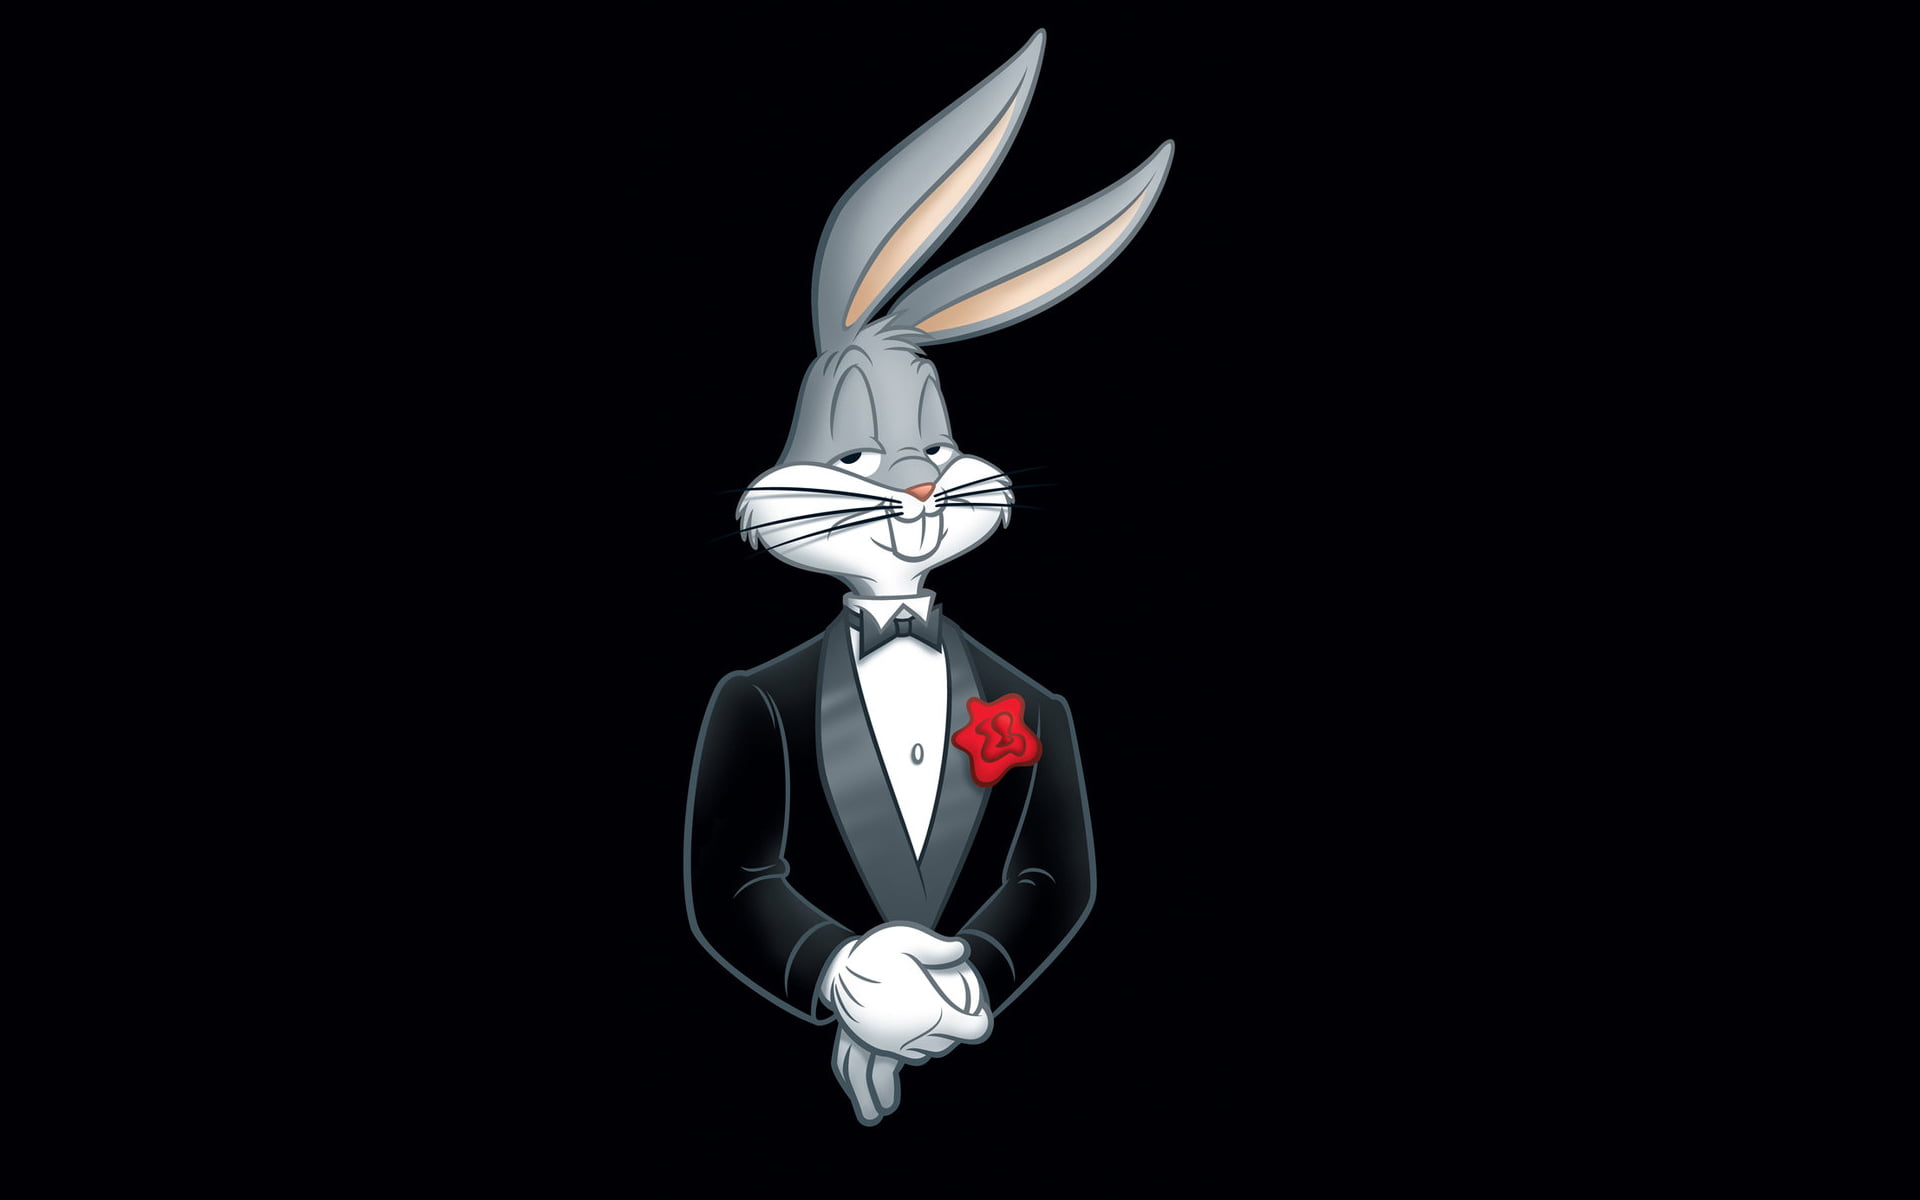 Bugs Bunny wearing tuxedo suit